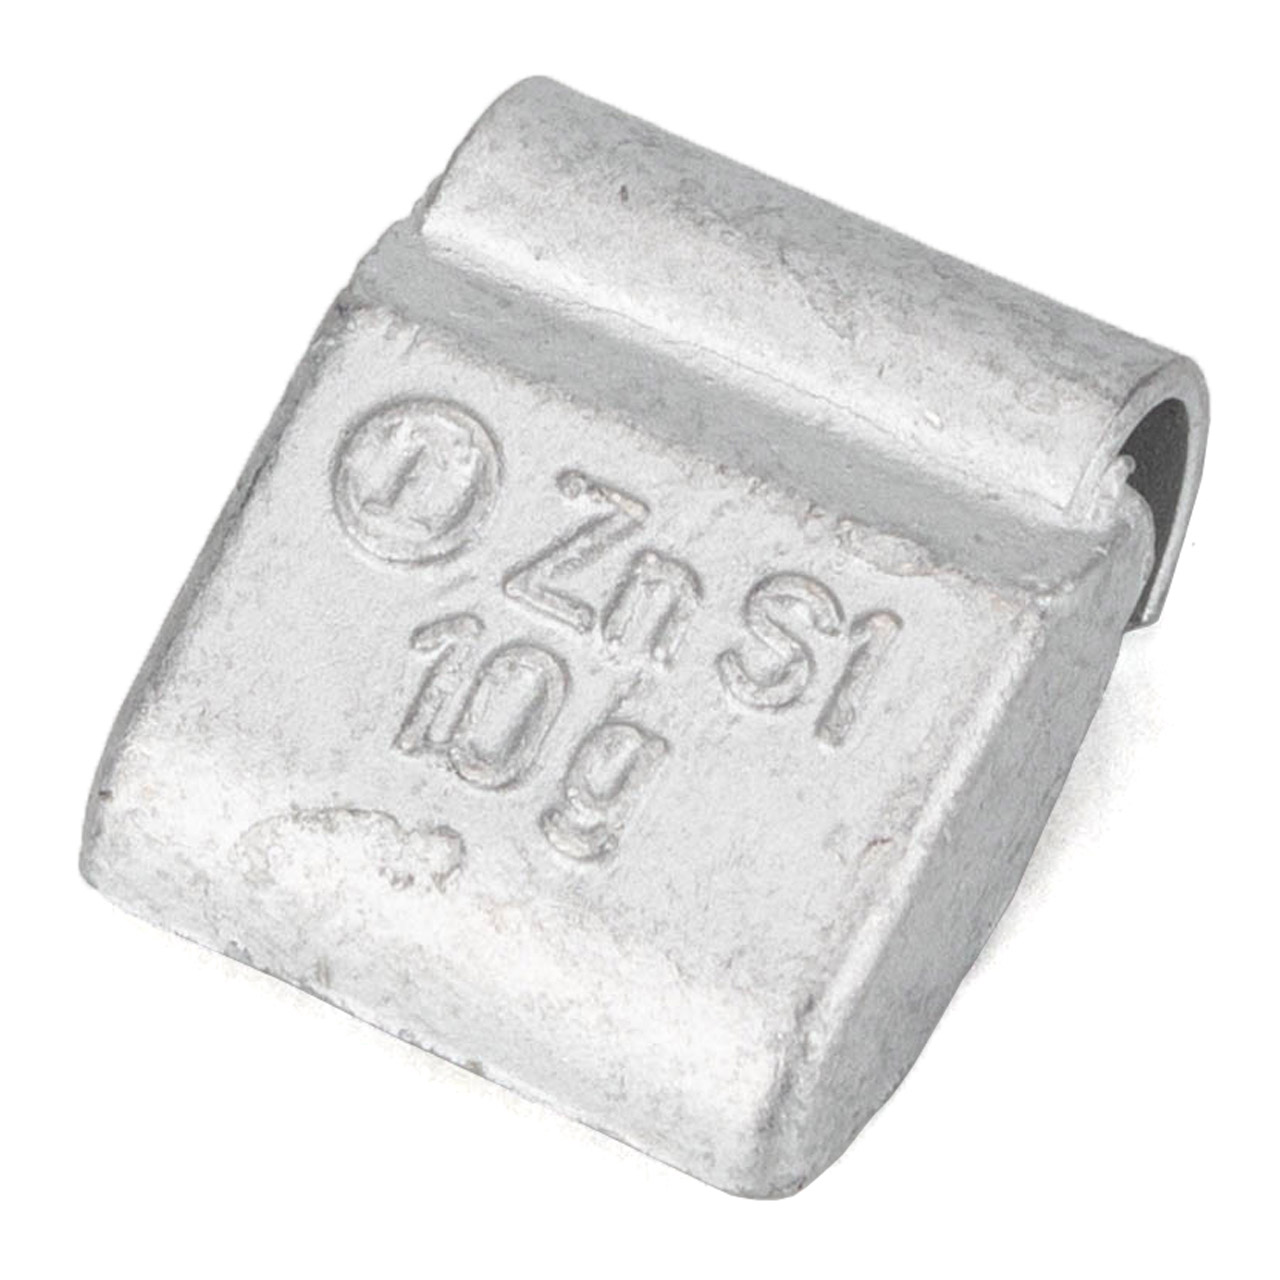 GEMATIC 10003 Auswuchtgewicht Schlaggewicht für Stahlfelge ZINK-SILBER 100 Stück x 10g